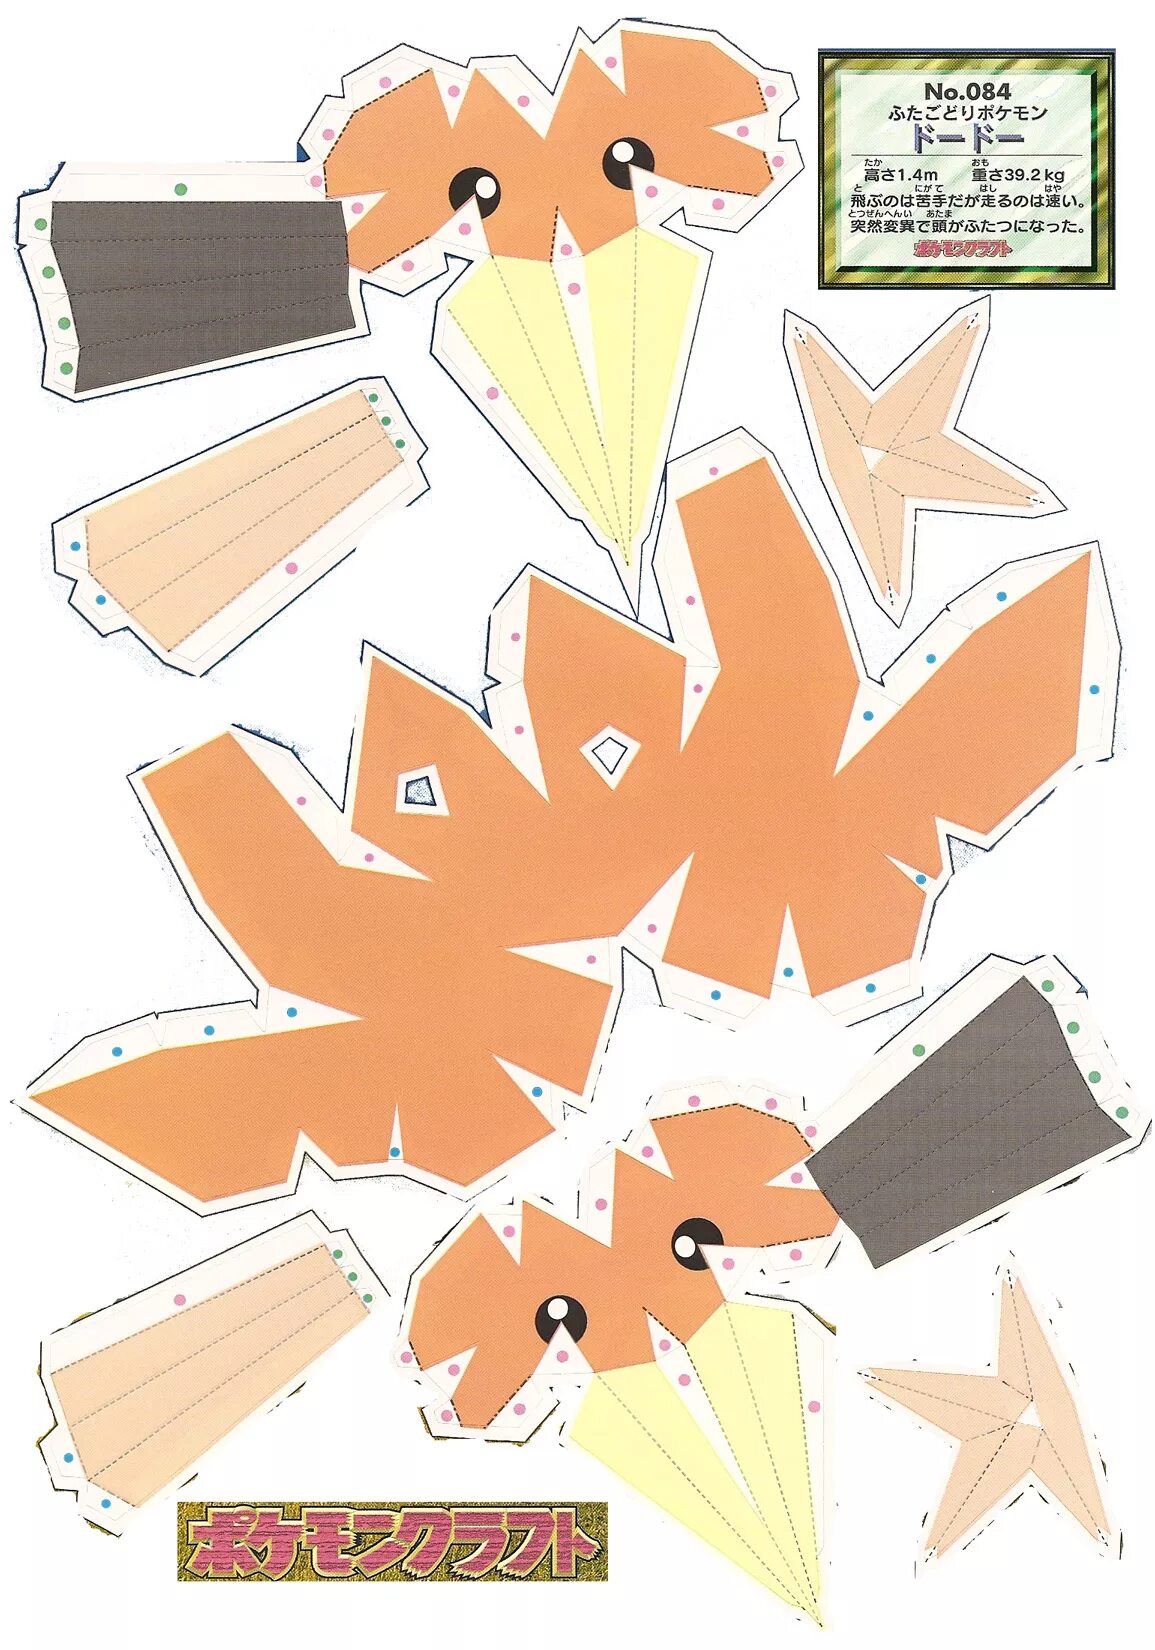 Паперкрафт покемоны схемы. Покемон иви оригами. Покемон иви схема из бумаги. Бумажный покемон иви. Покемоны из бумаги